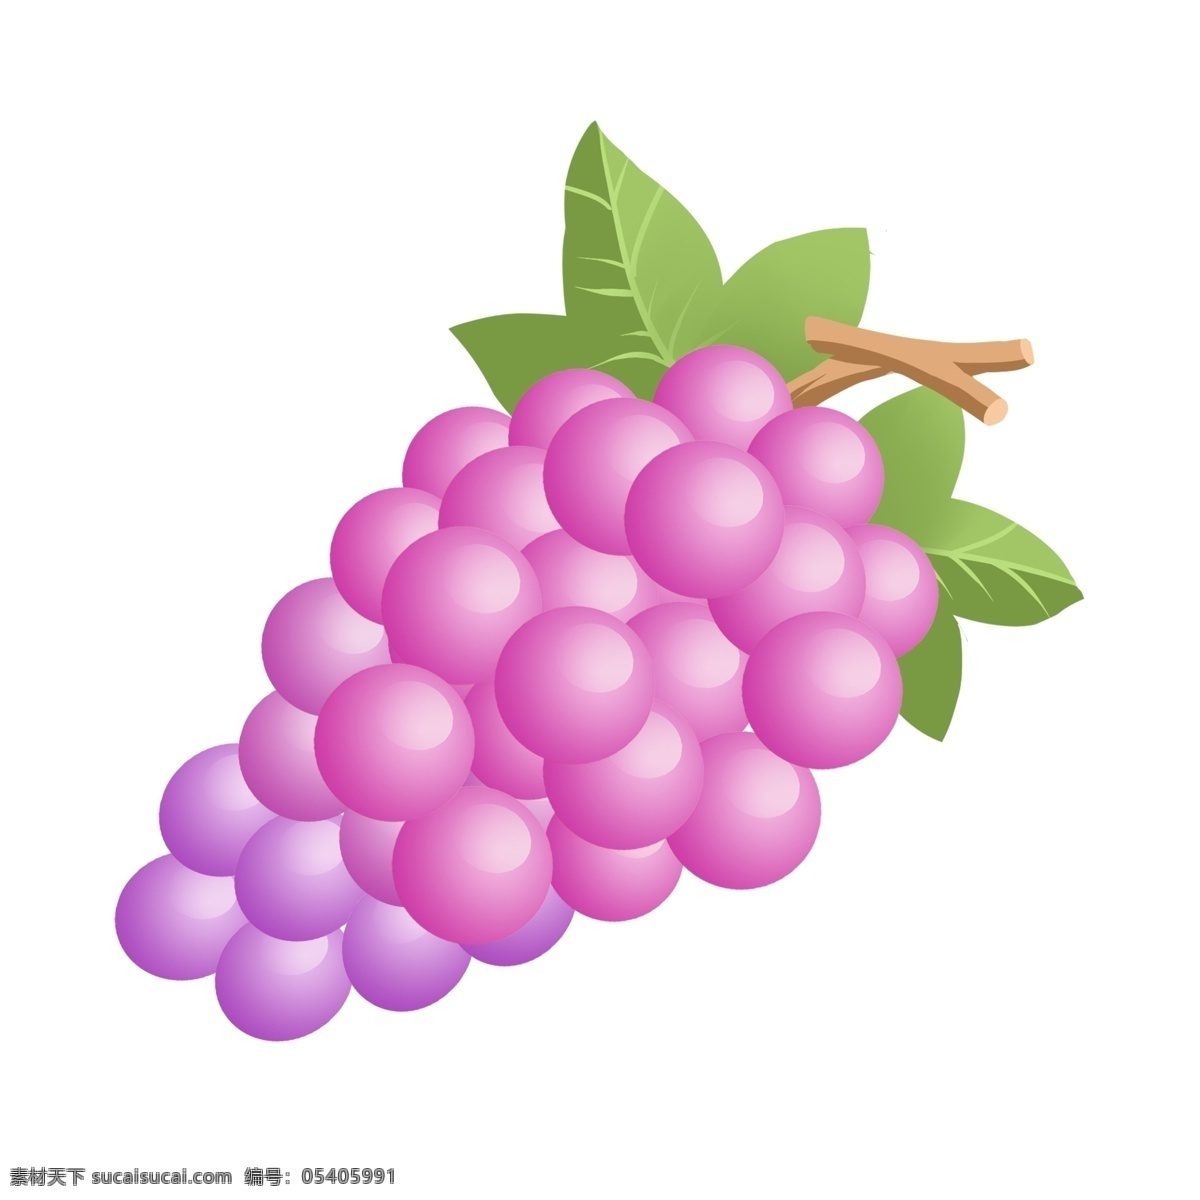 手绘 夏季 自然 清新 水果 紫色 葡萄 免 抠 夏季元素